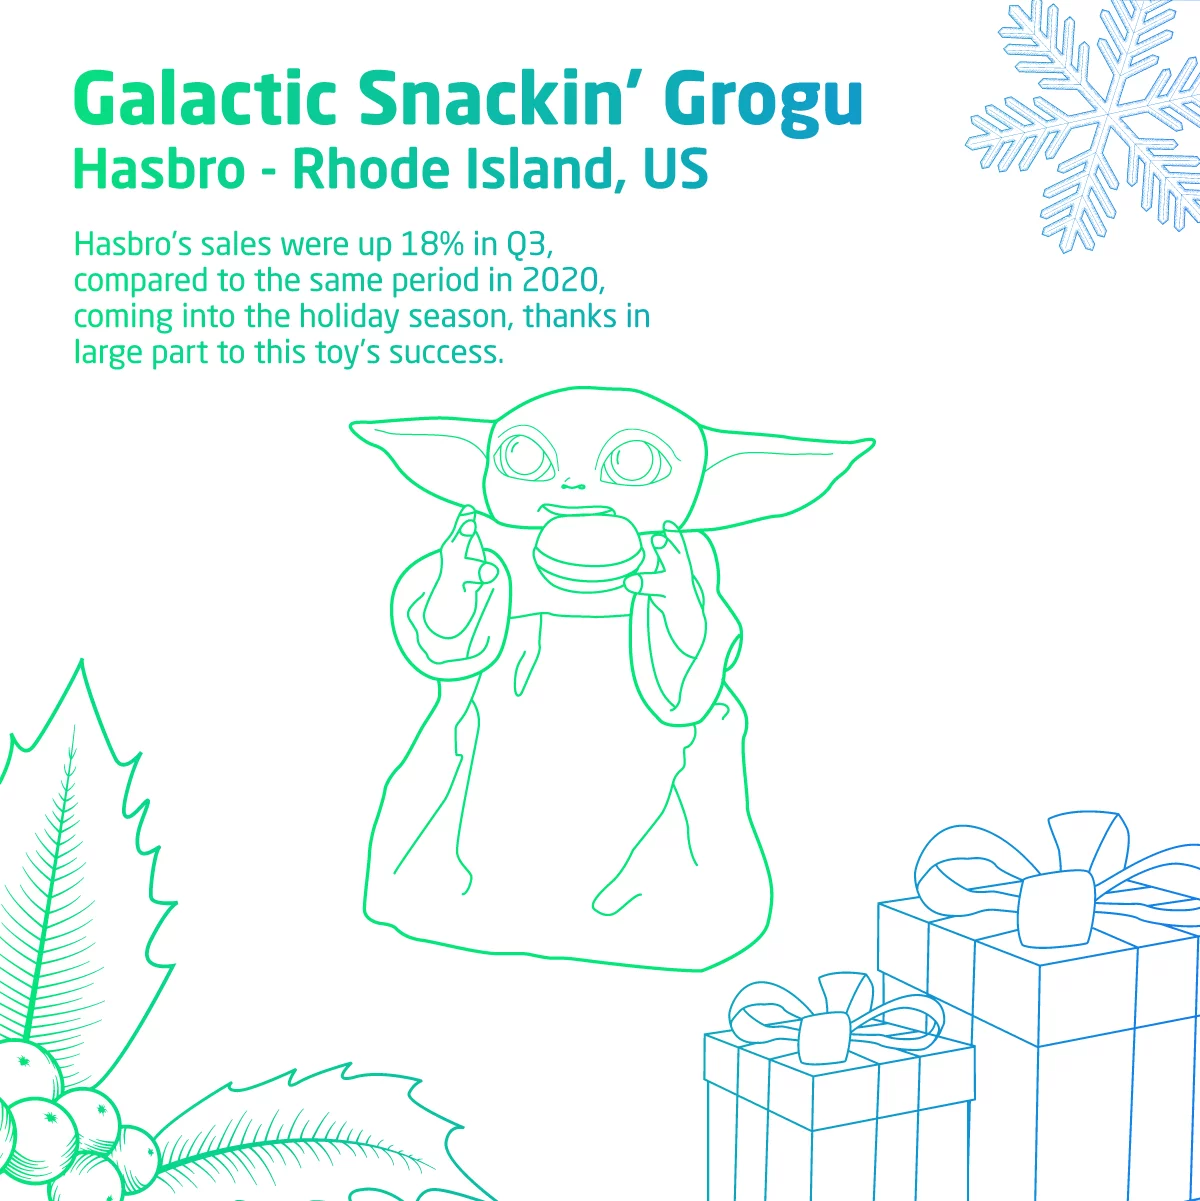 Galactic Snackin' Grogu 2021 Holiday Sales